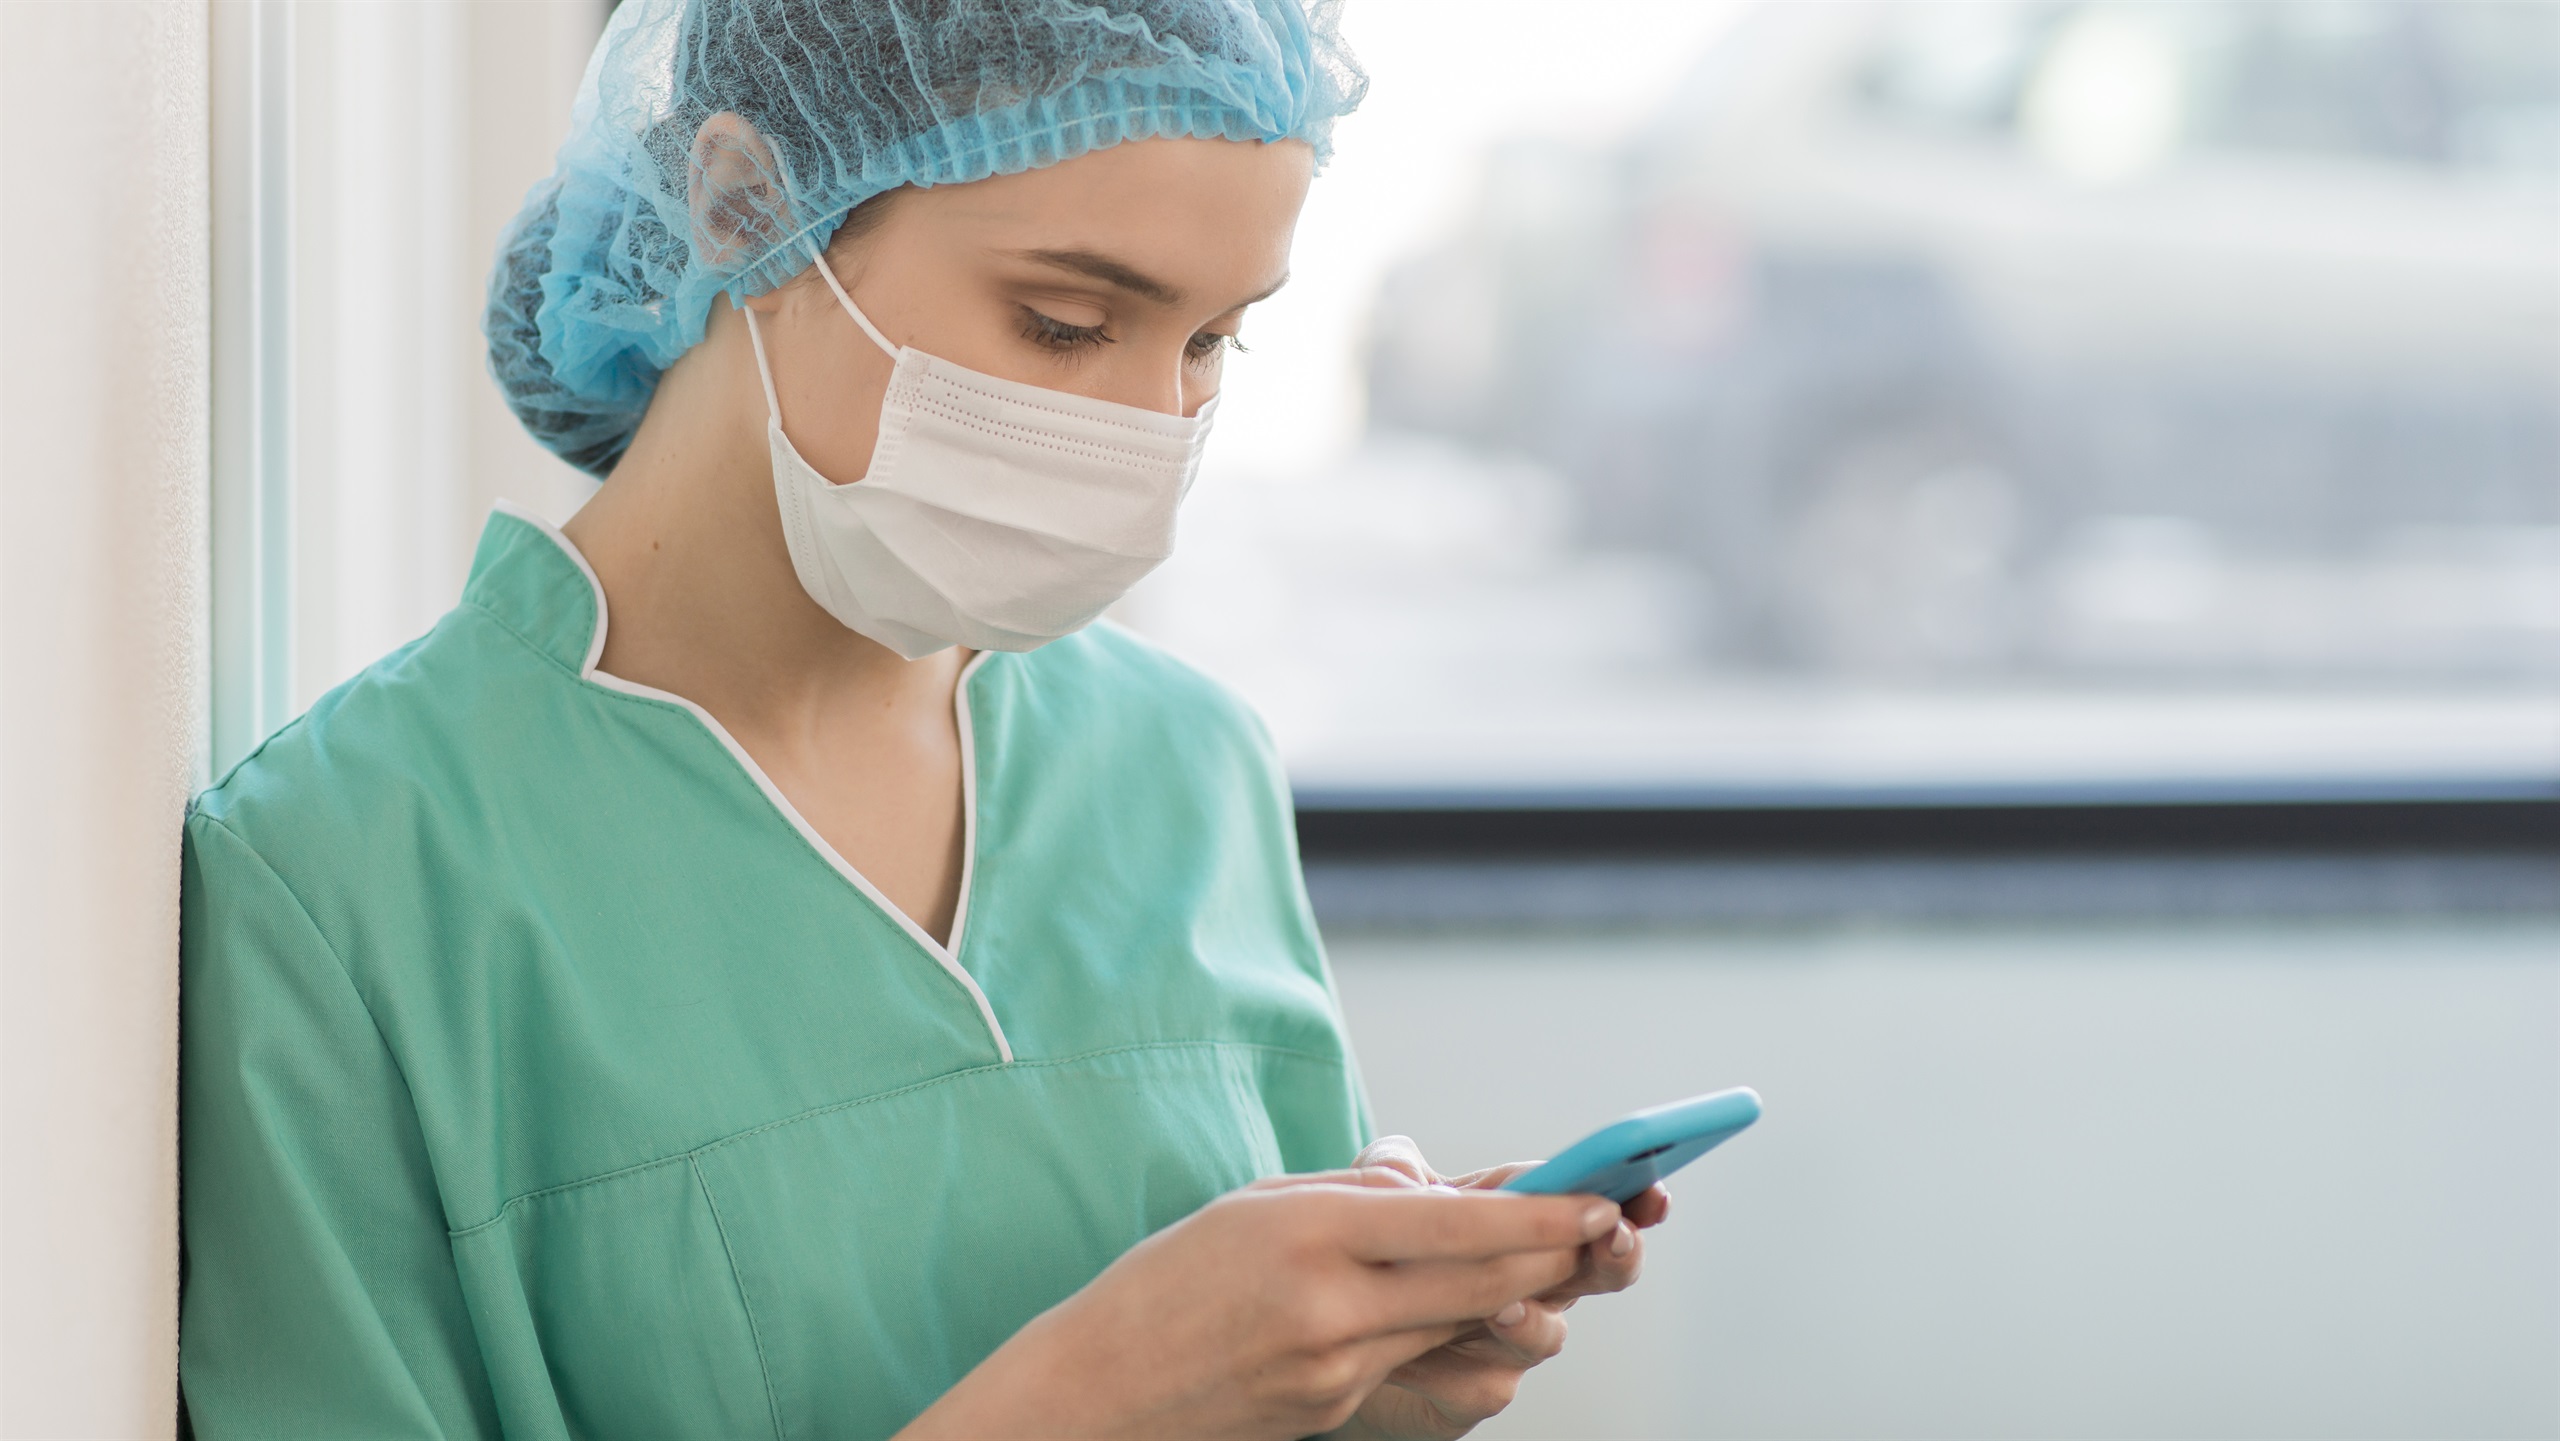 Les infermeres creuen que les xarxes socials poden ser útils per millorar la pràctica clínica, però demanen més formació